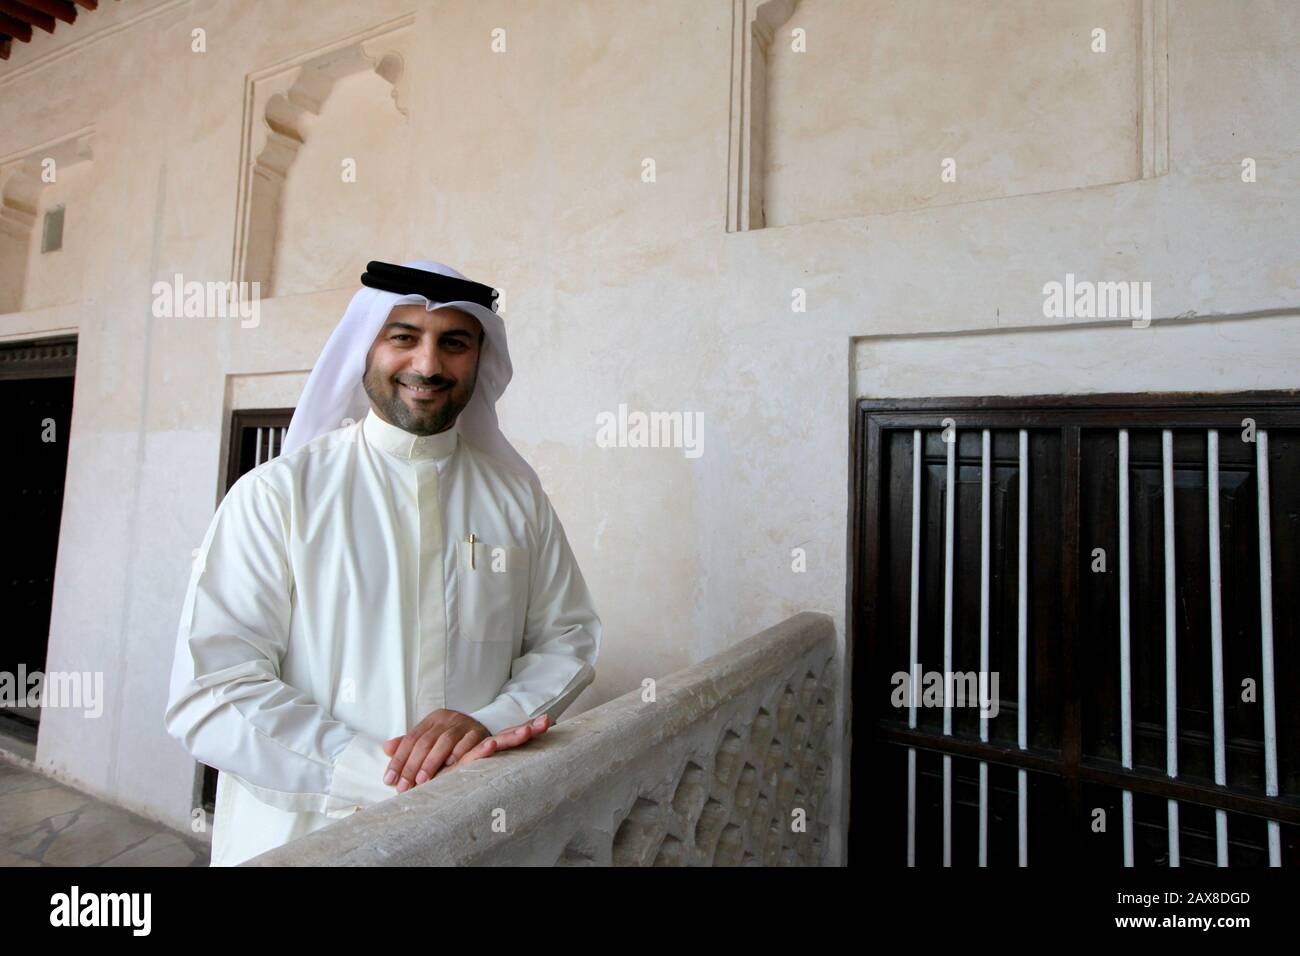 An Emirati man in Ajman, UAE. Stock Photo